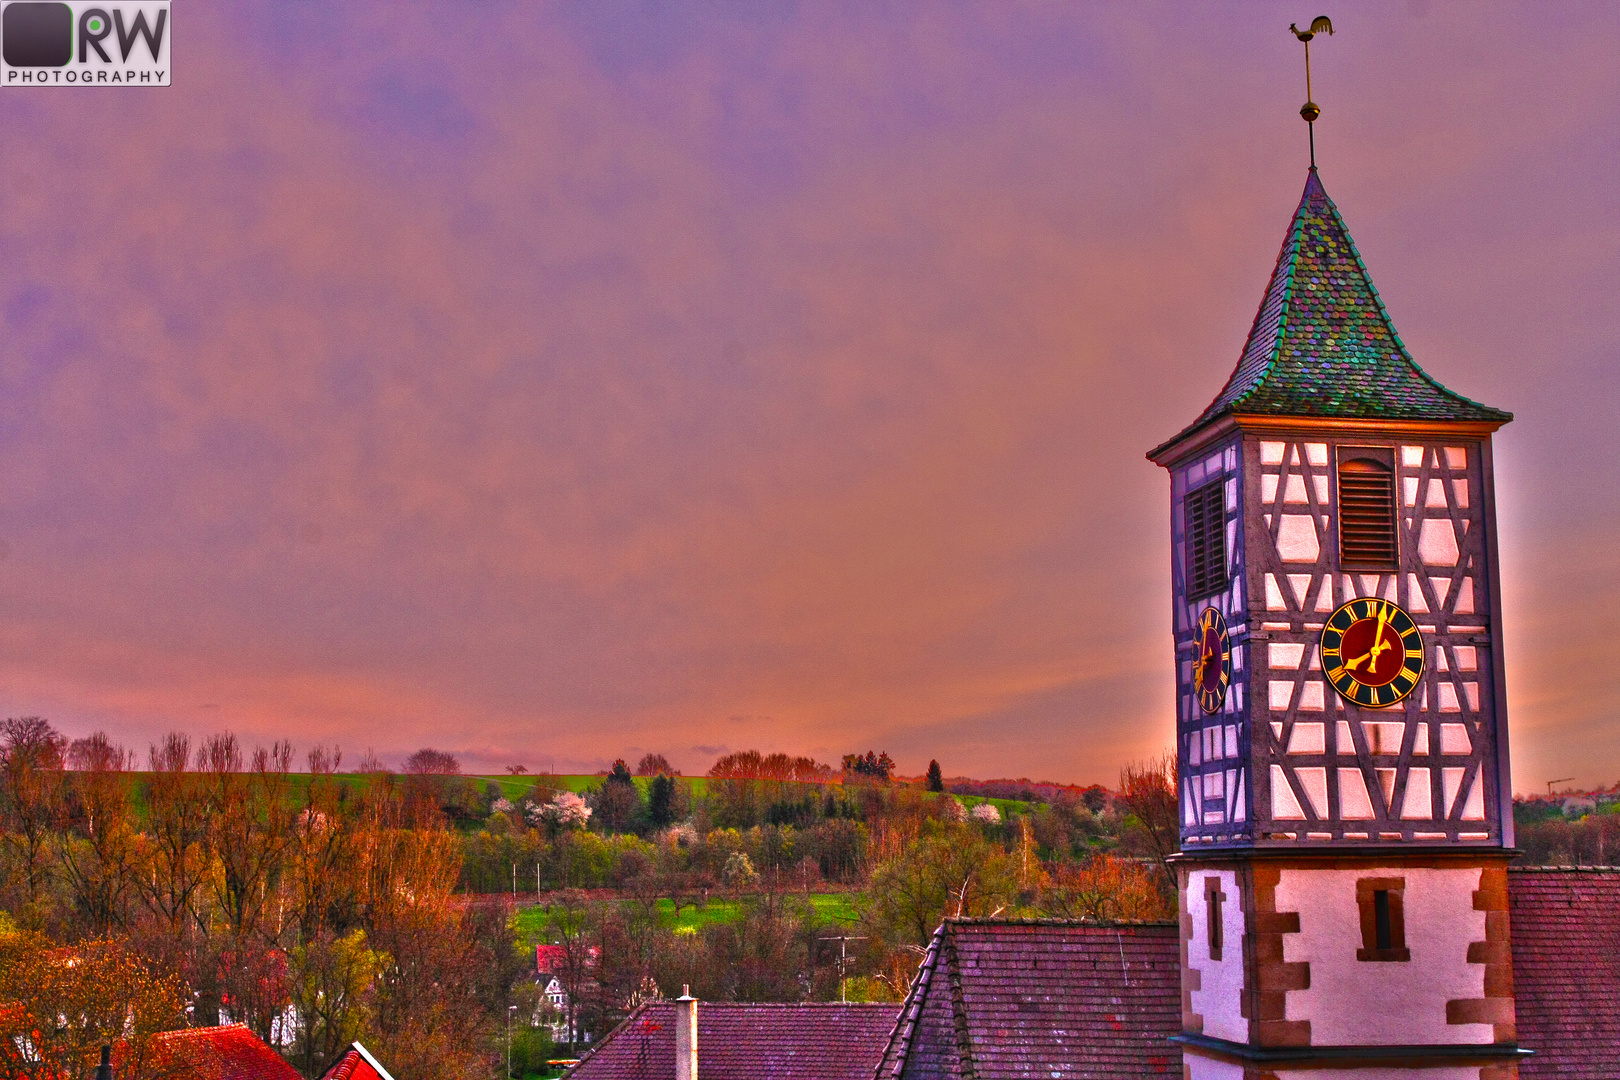 Glockenturm von Neckarhausen